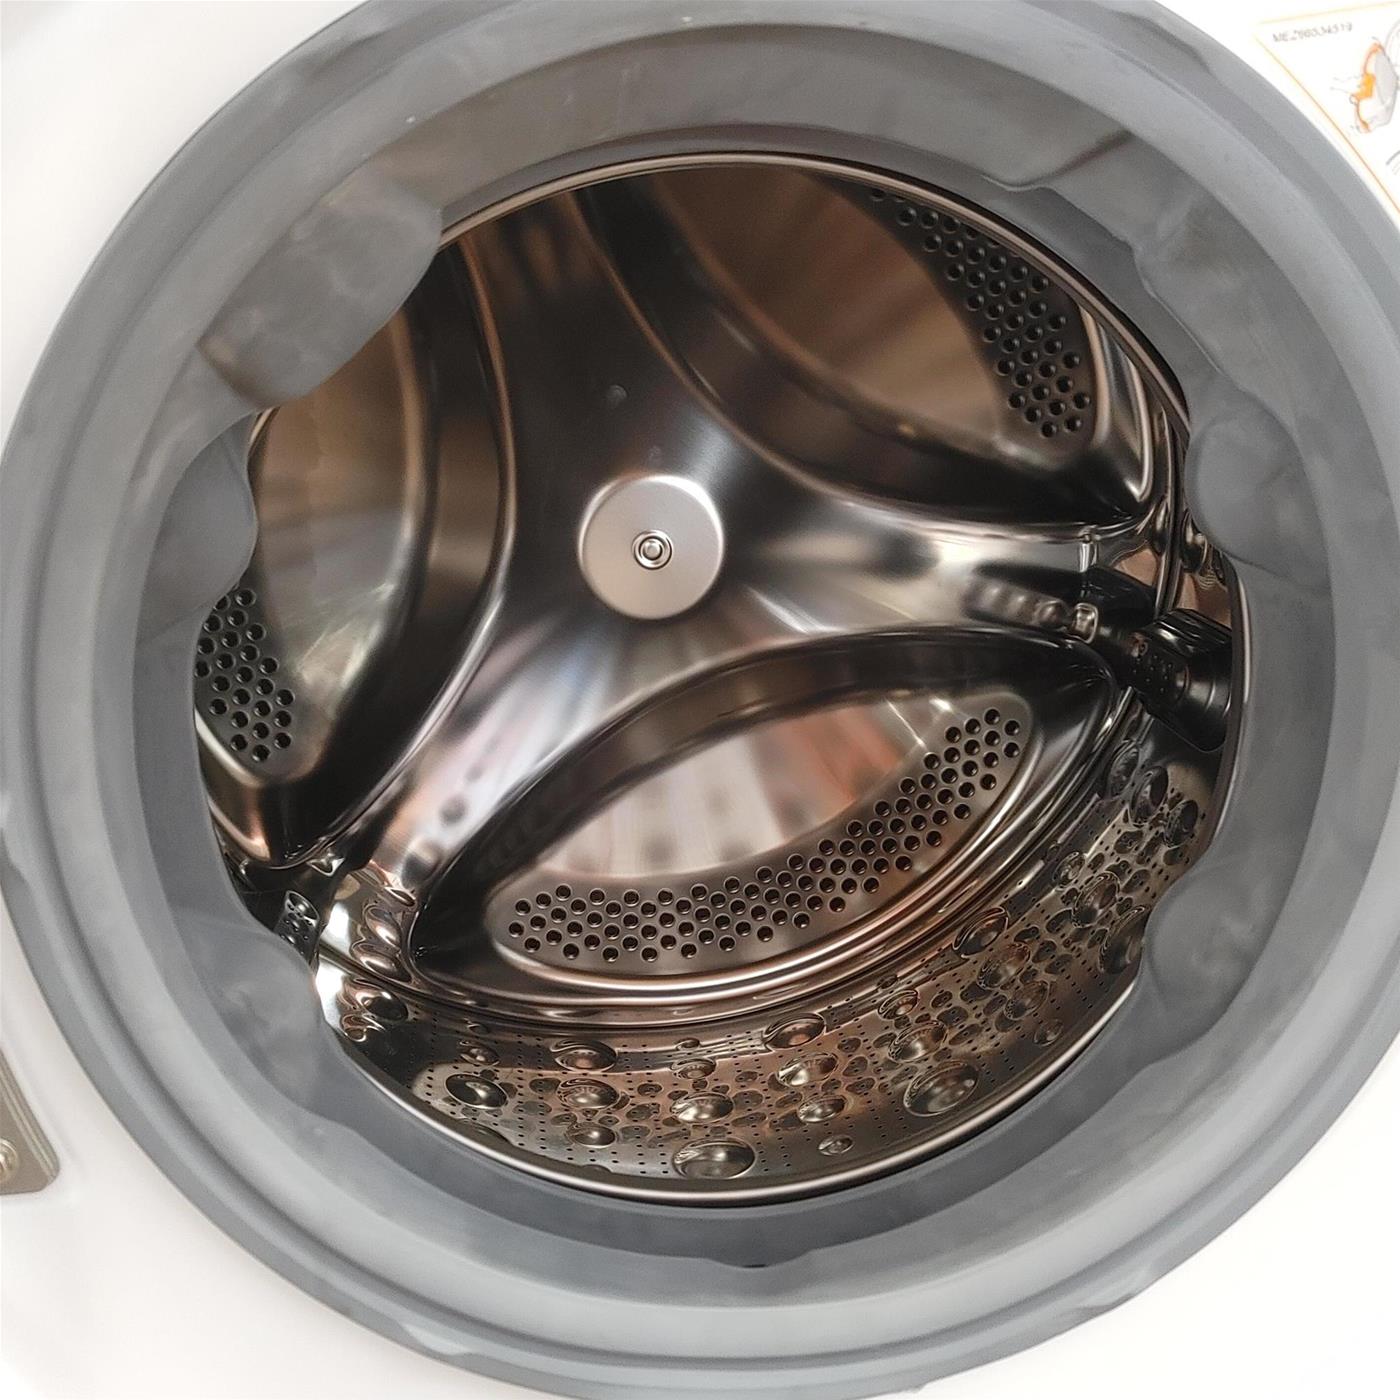 LG F6WV710SGA lavatrice Smart AI DD Libera Installazione Autodose Vapore TurboWash 360 10.5 kg